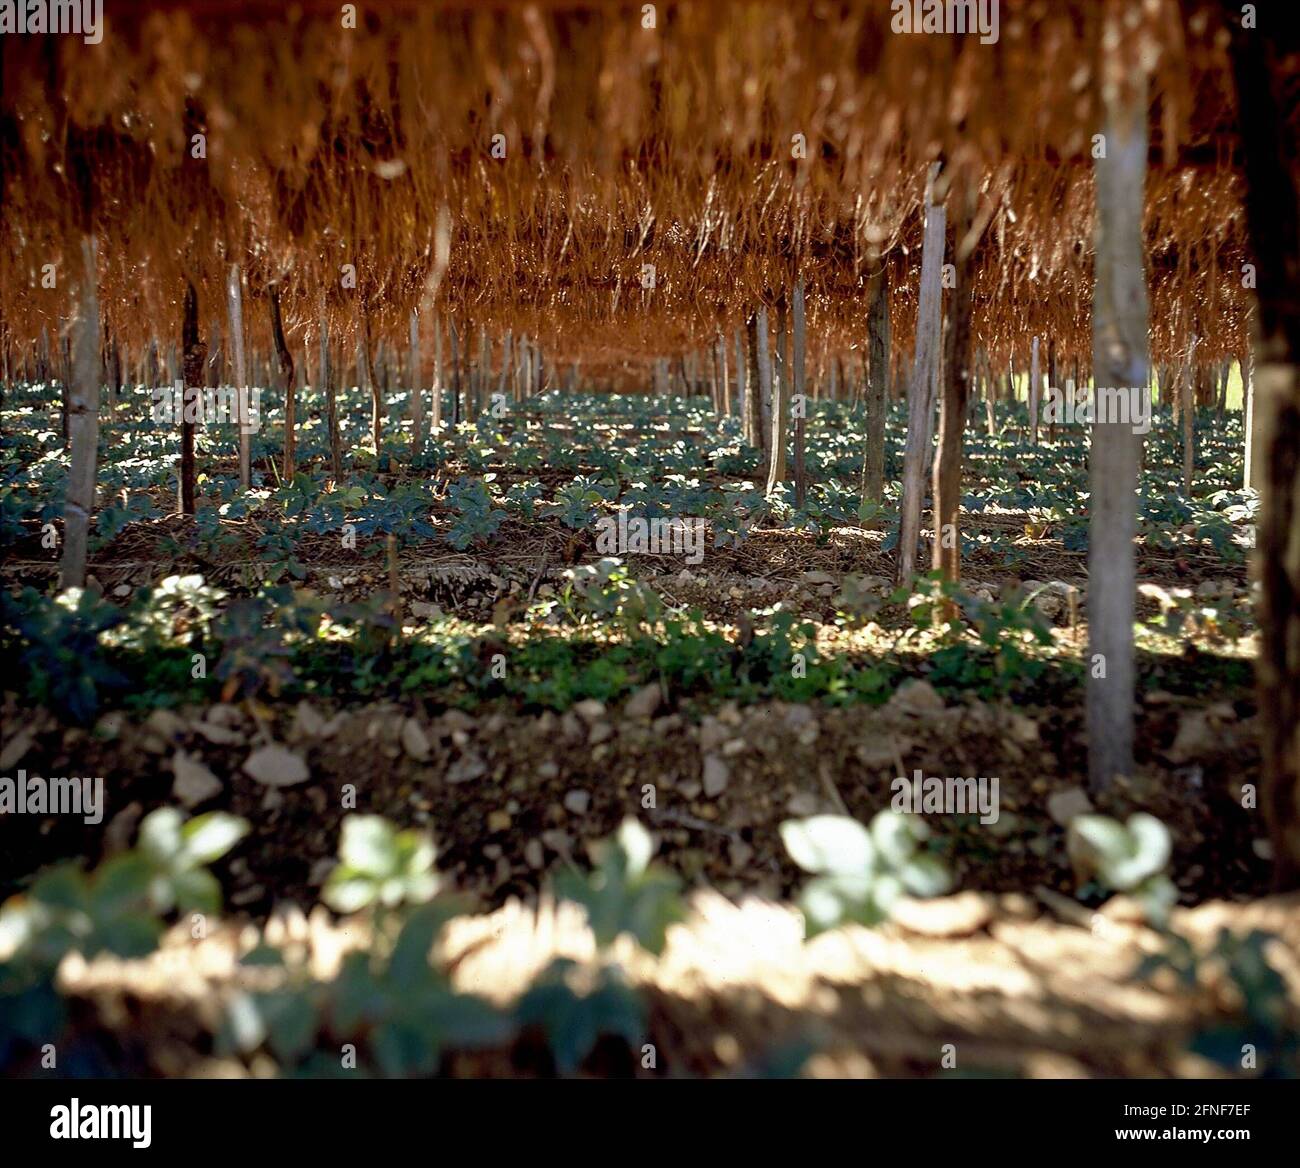 Poiché il ginseng è una pianta di ombra, i campi sono protetti dal sole con i tappetini di riso. [traduzione automatizzata] Foto Stock